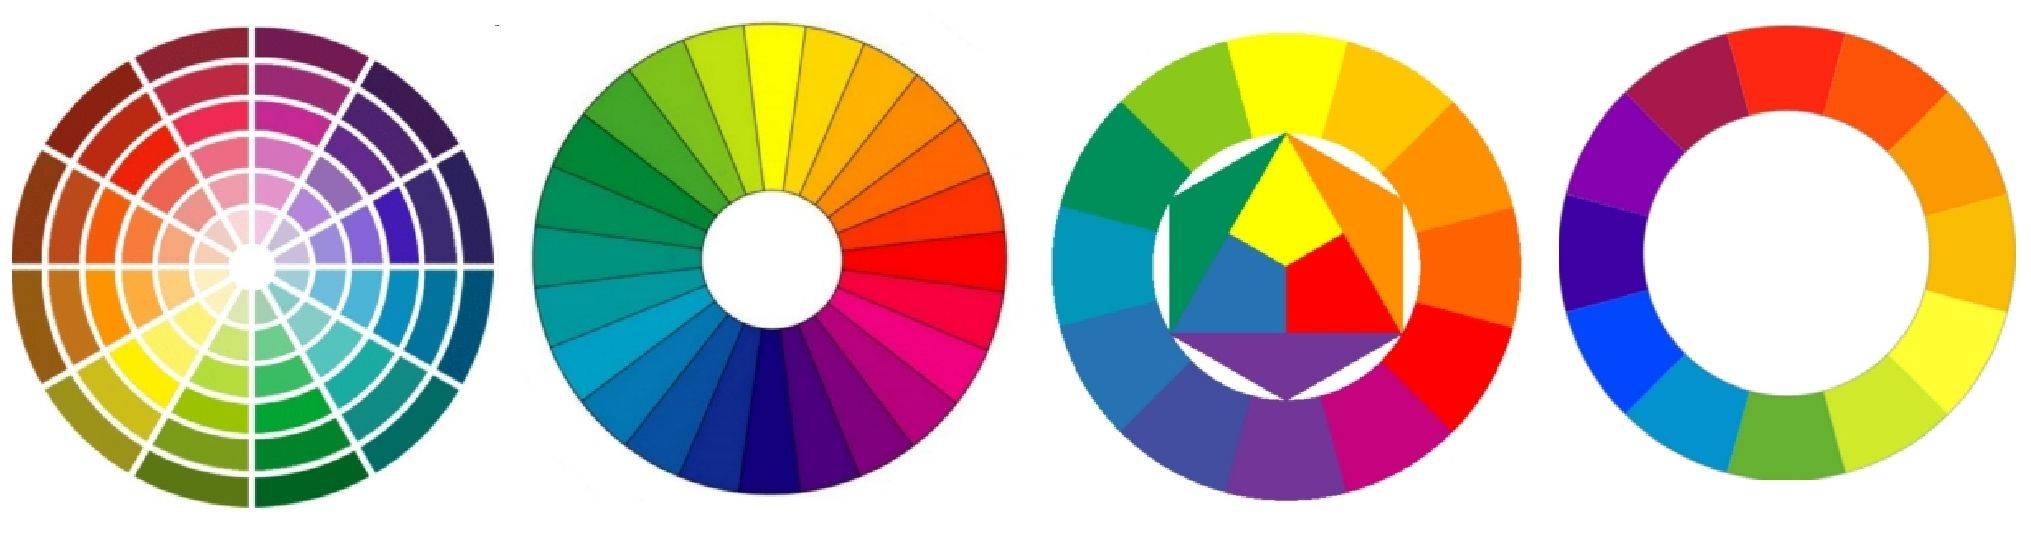 Теория цвета (гете) - abcdef.wiki